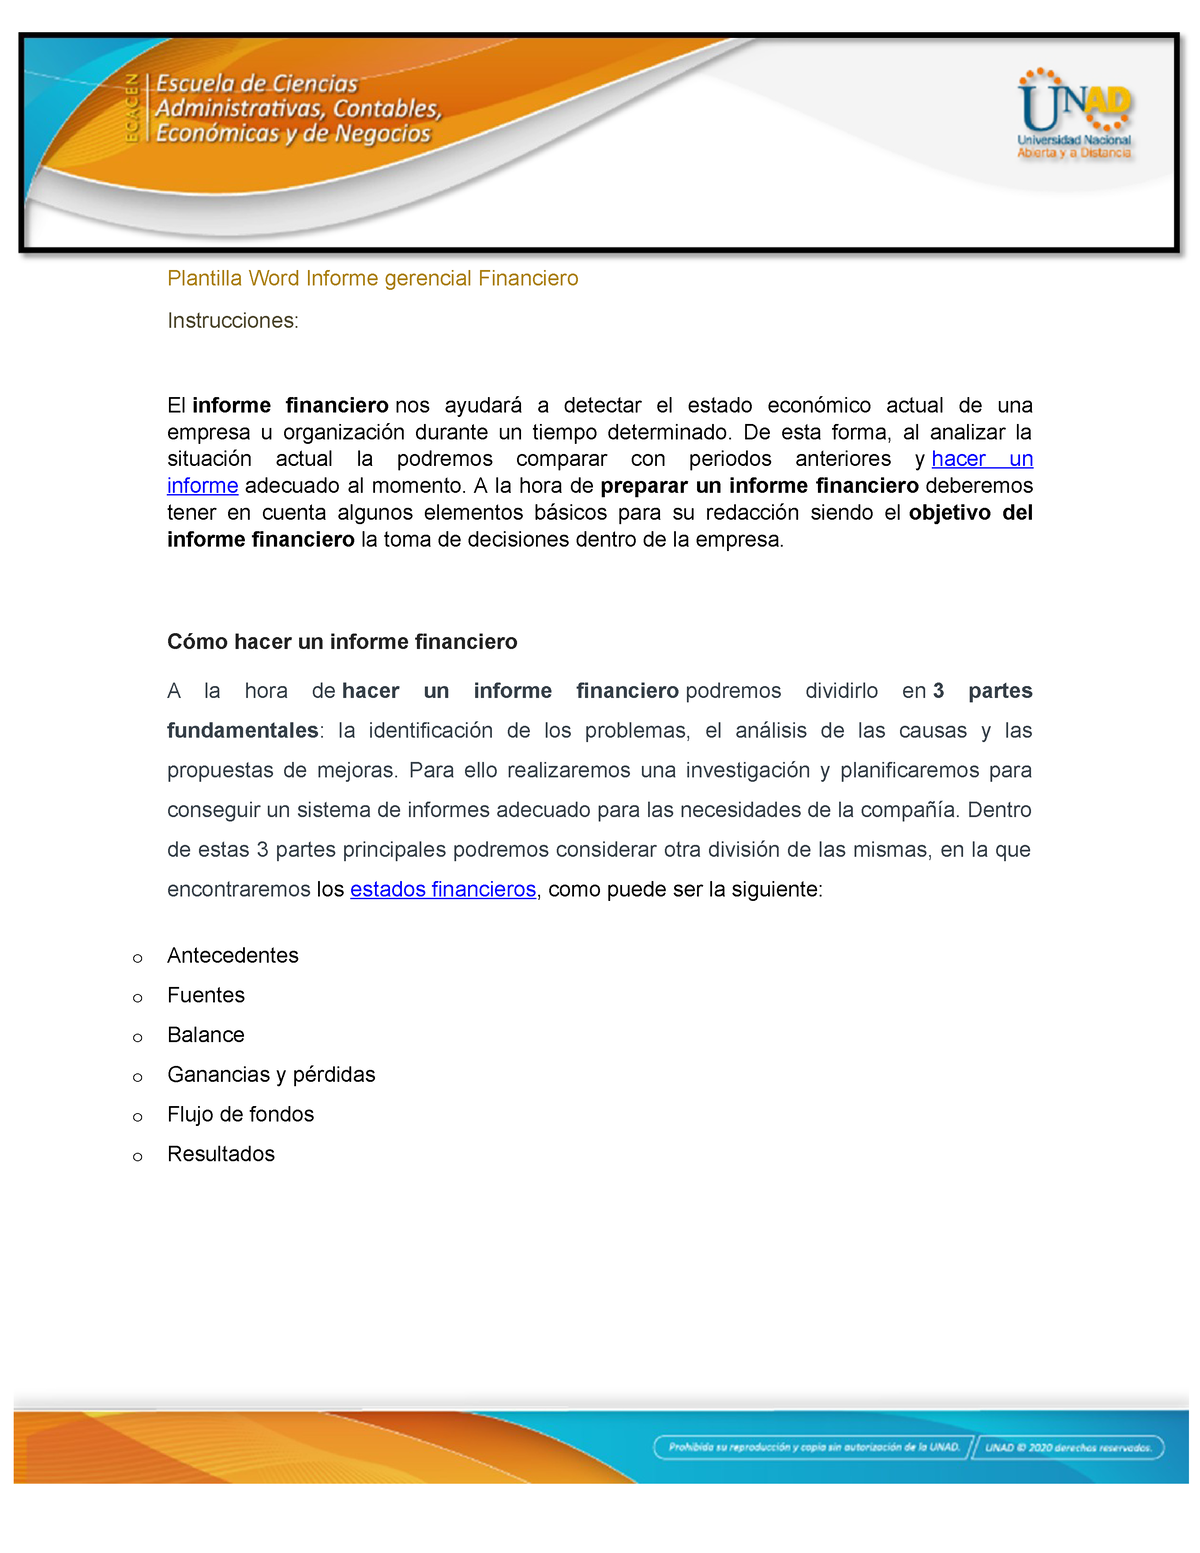 Anexo 1 - Fase 4 Plantilla Informe Gerencial Financiero - Plantilla Word  Informe gerencial - Studocu